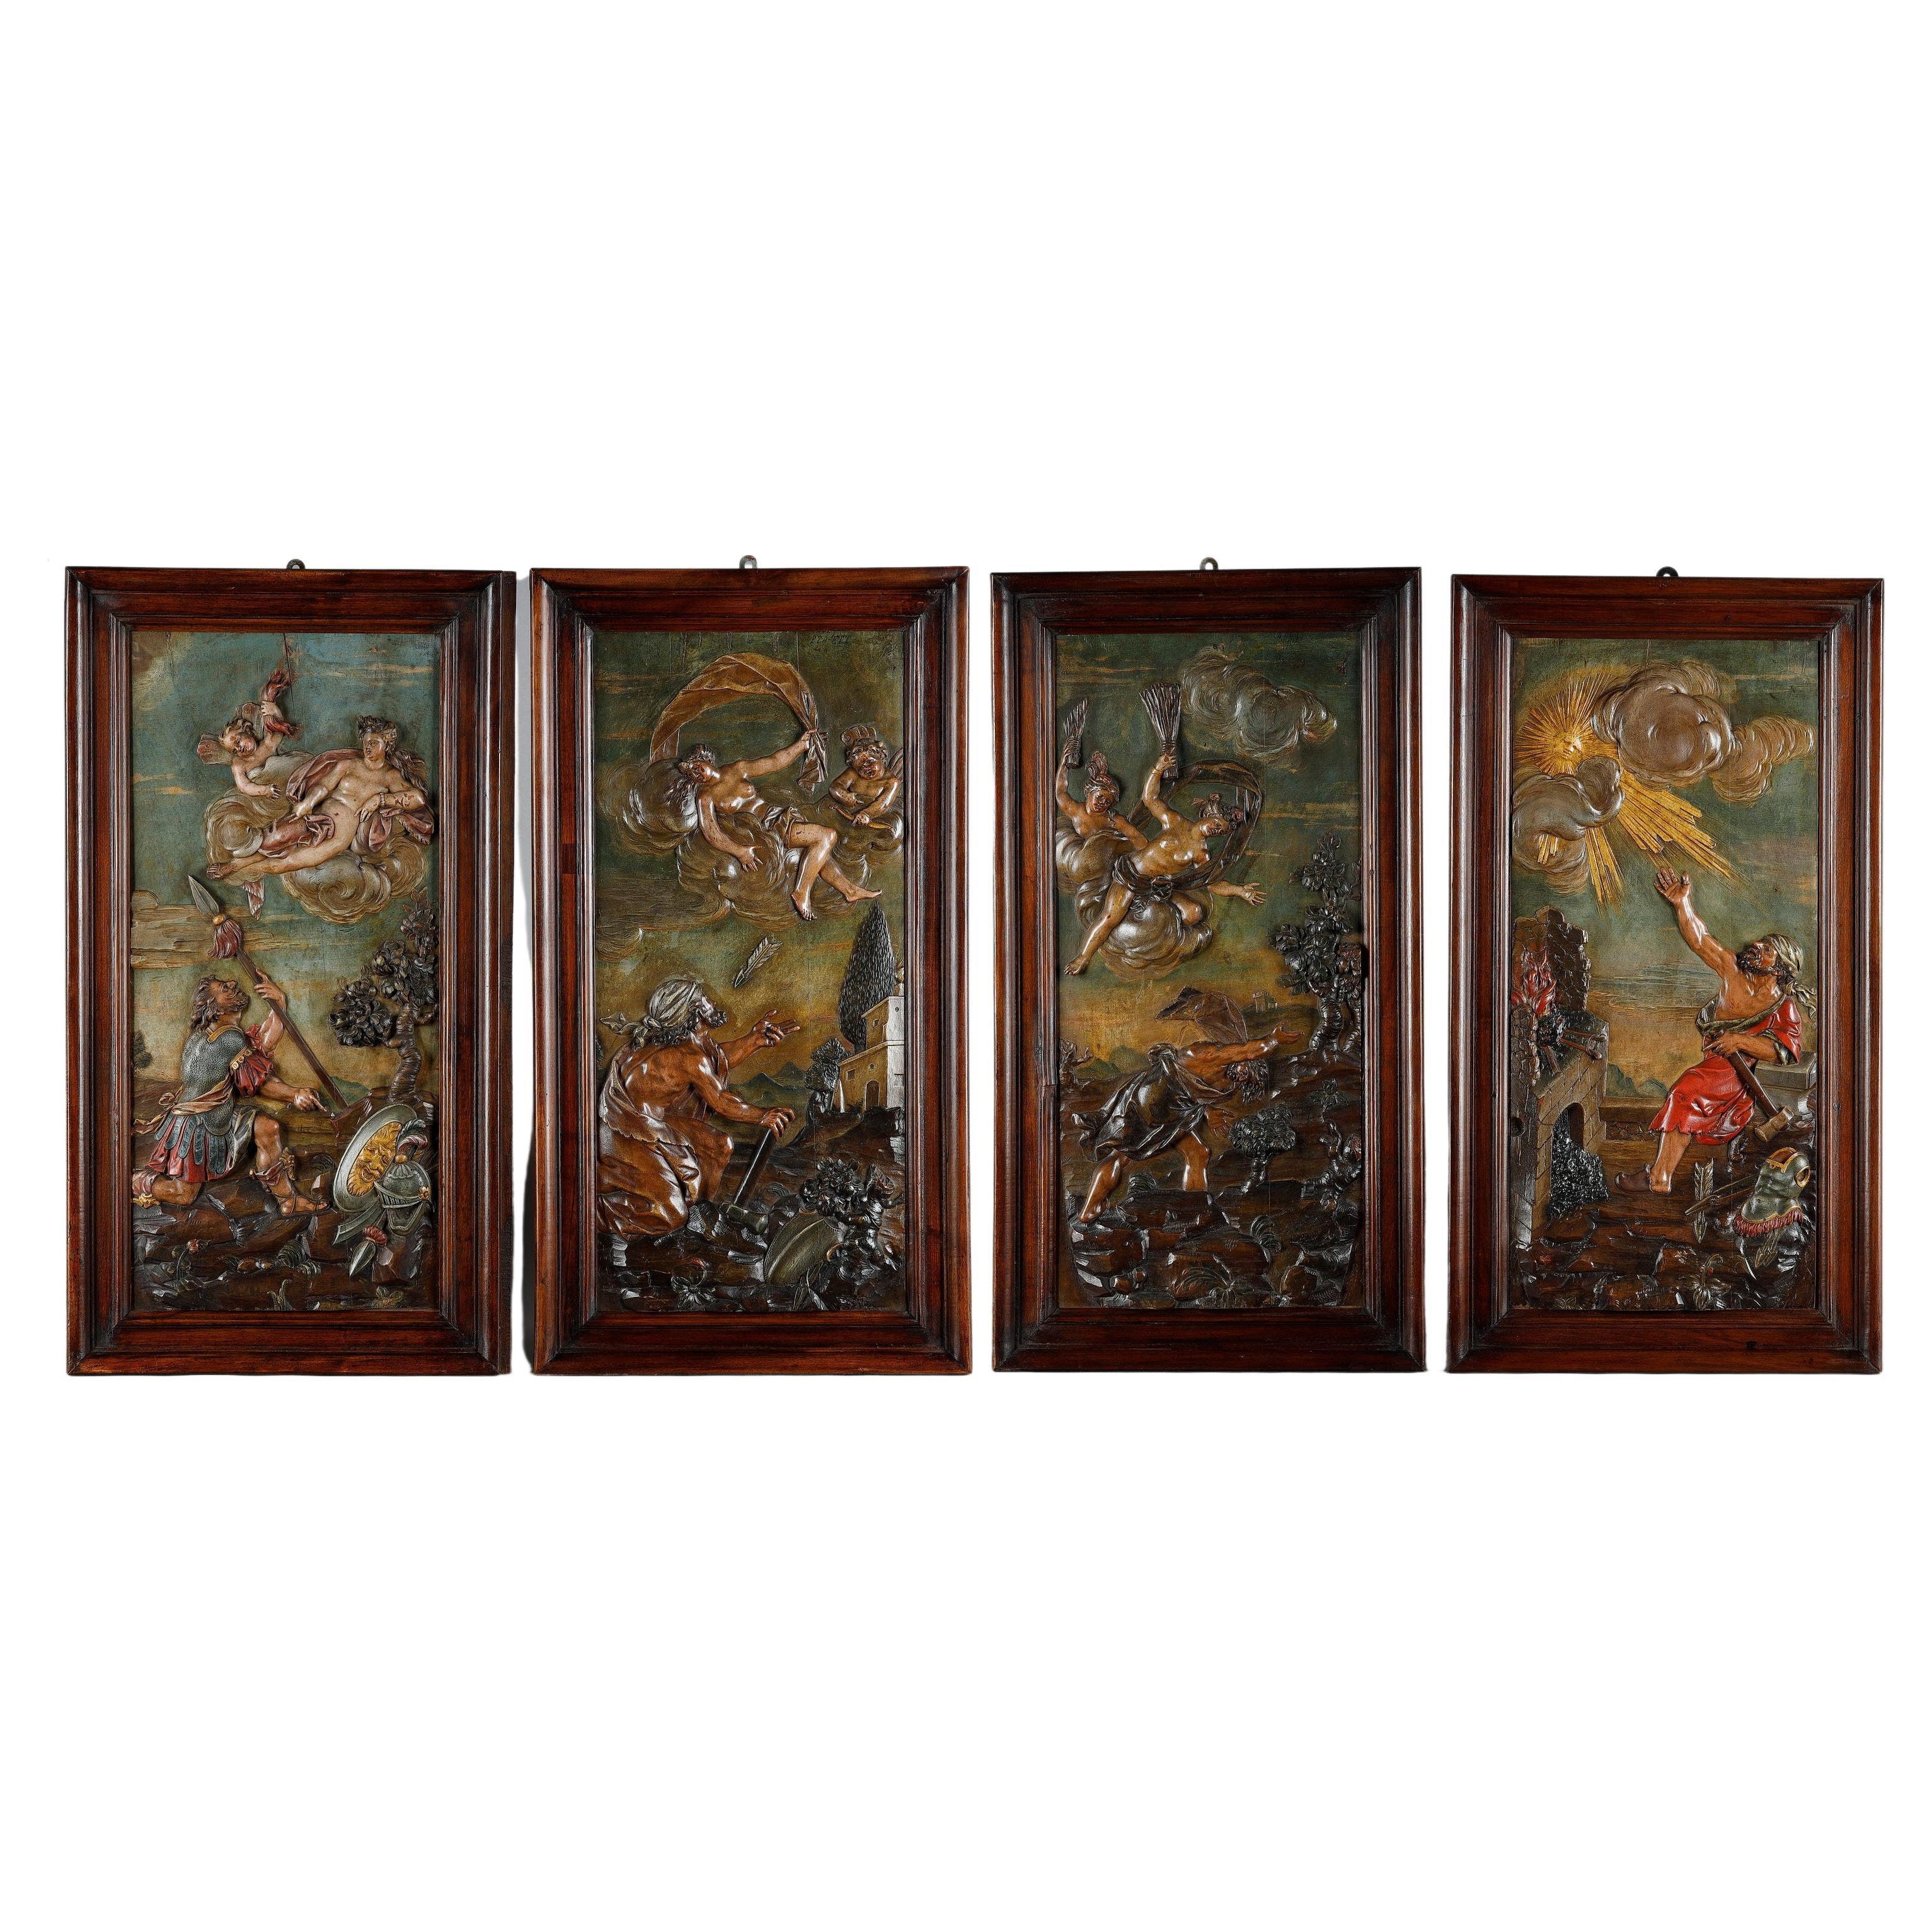 Suite aus vier geschnitzten Bassholzplatten aus dem 18. Jahrhundert